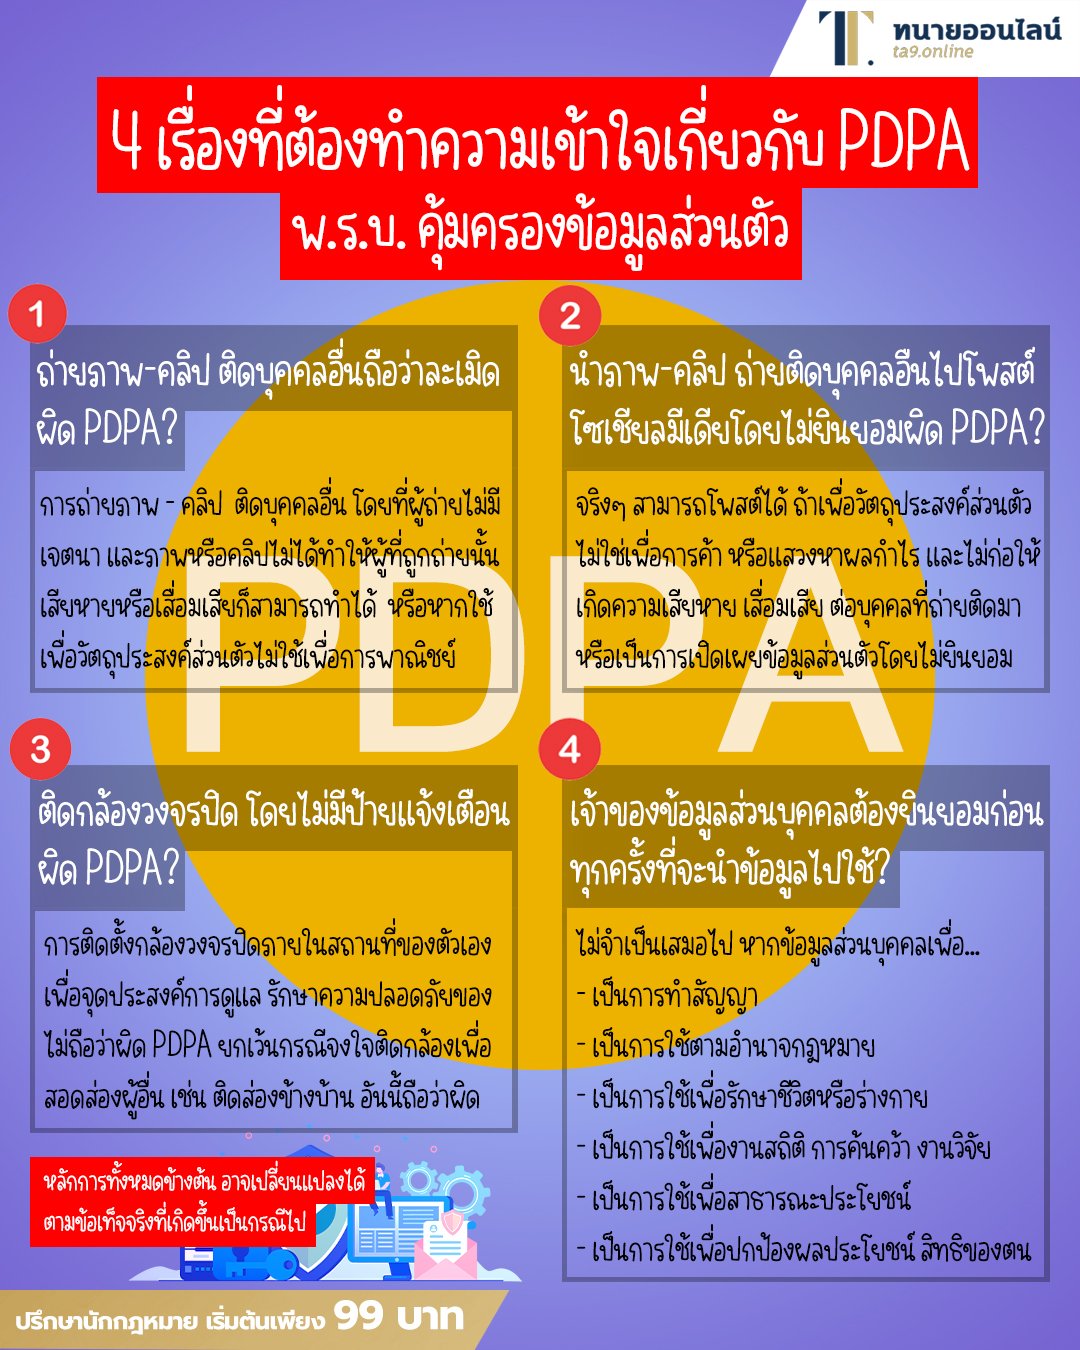 4 เรื่องที่ต้องทำความเข้าใจเกี่ยวกับ PDPA